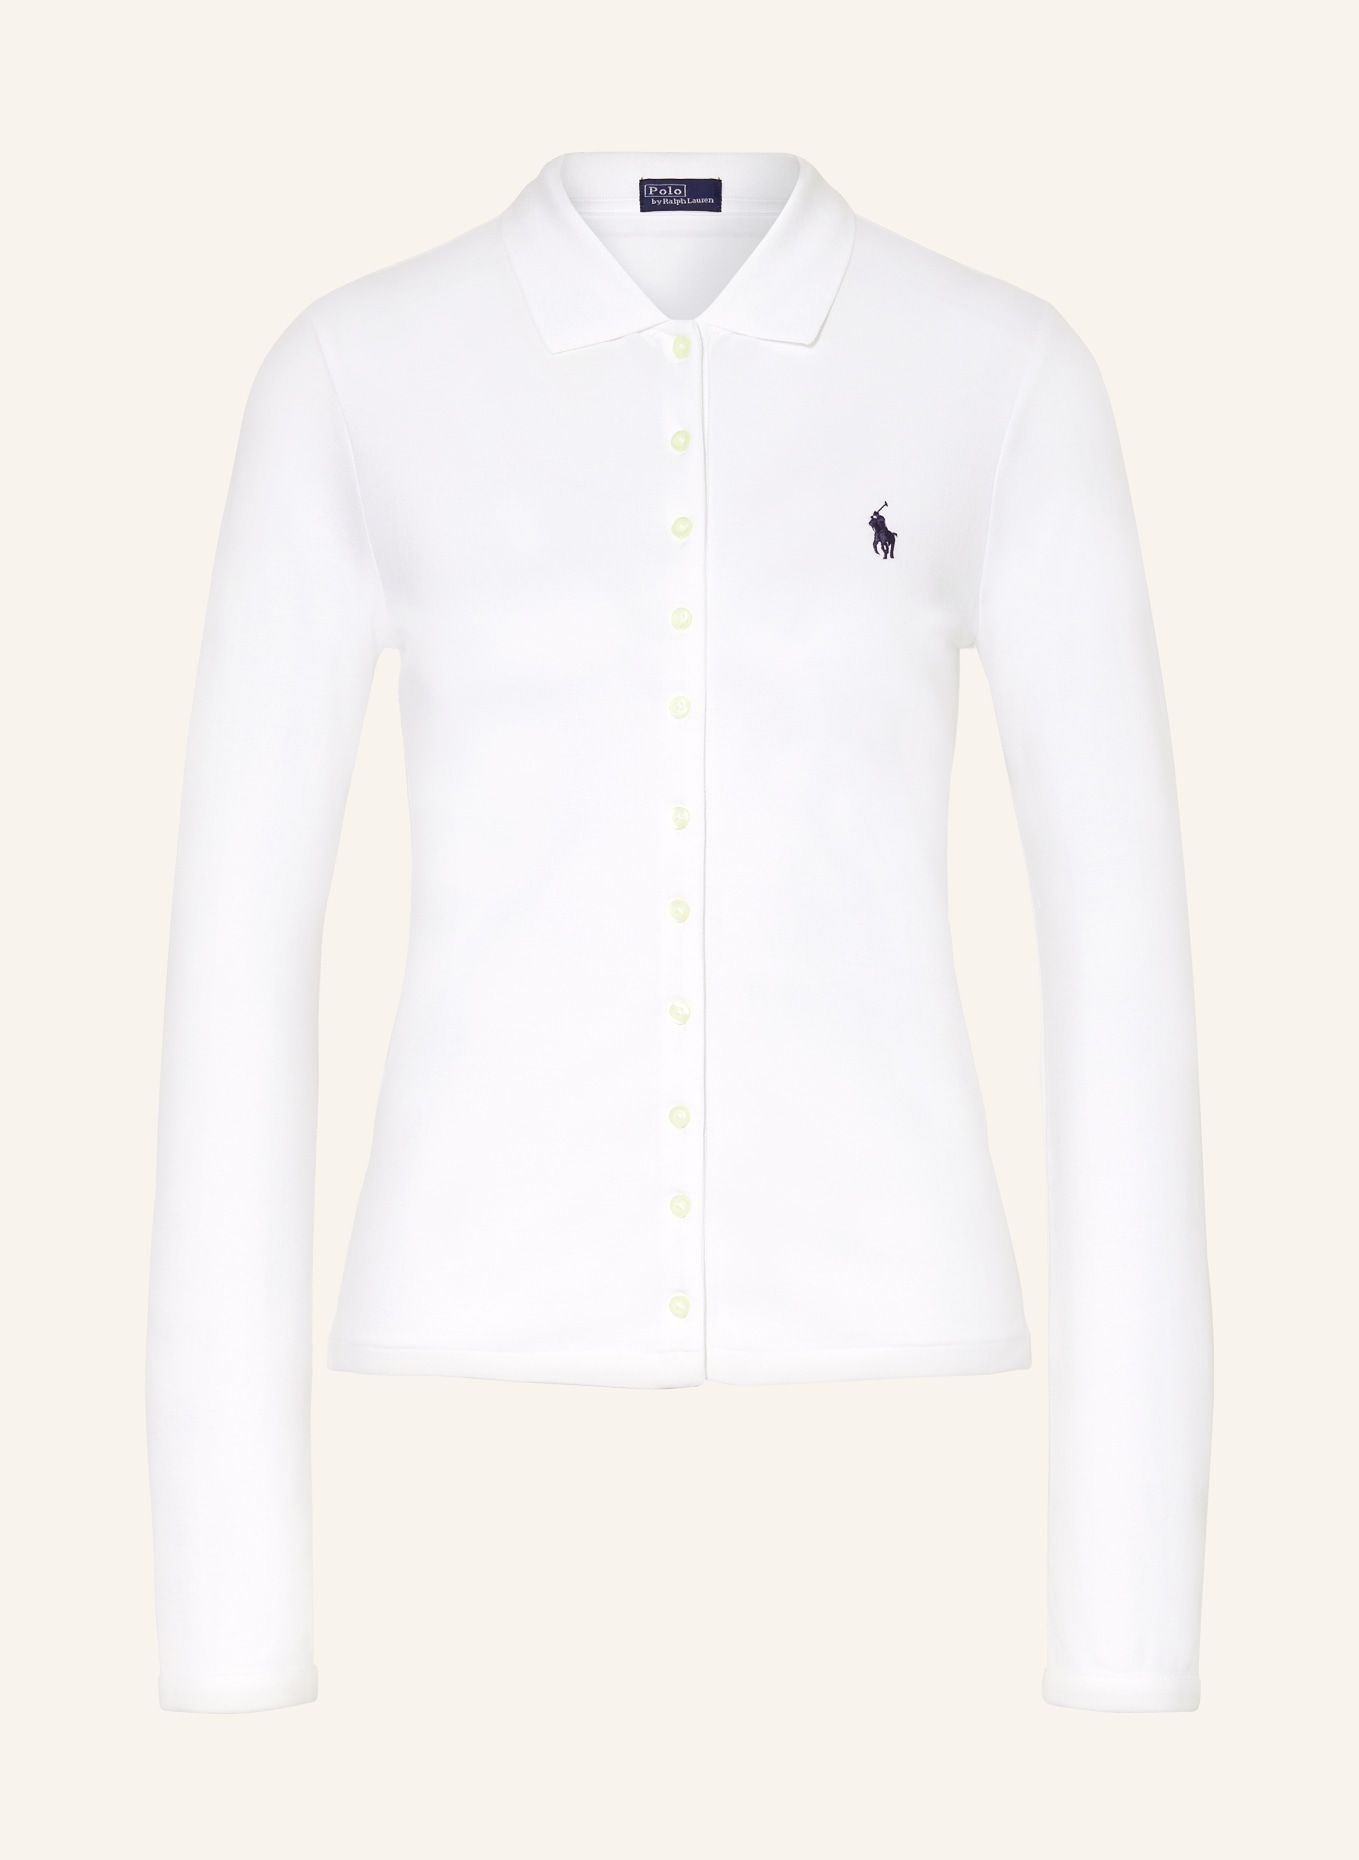 POLO RALPH LAUREN Piqué polo shirt, Color: WHITE (Image 1)